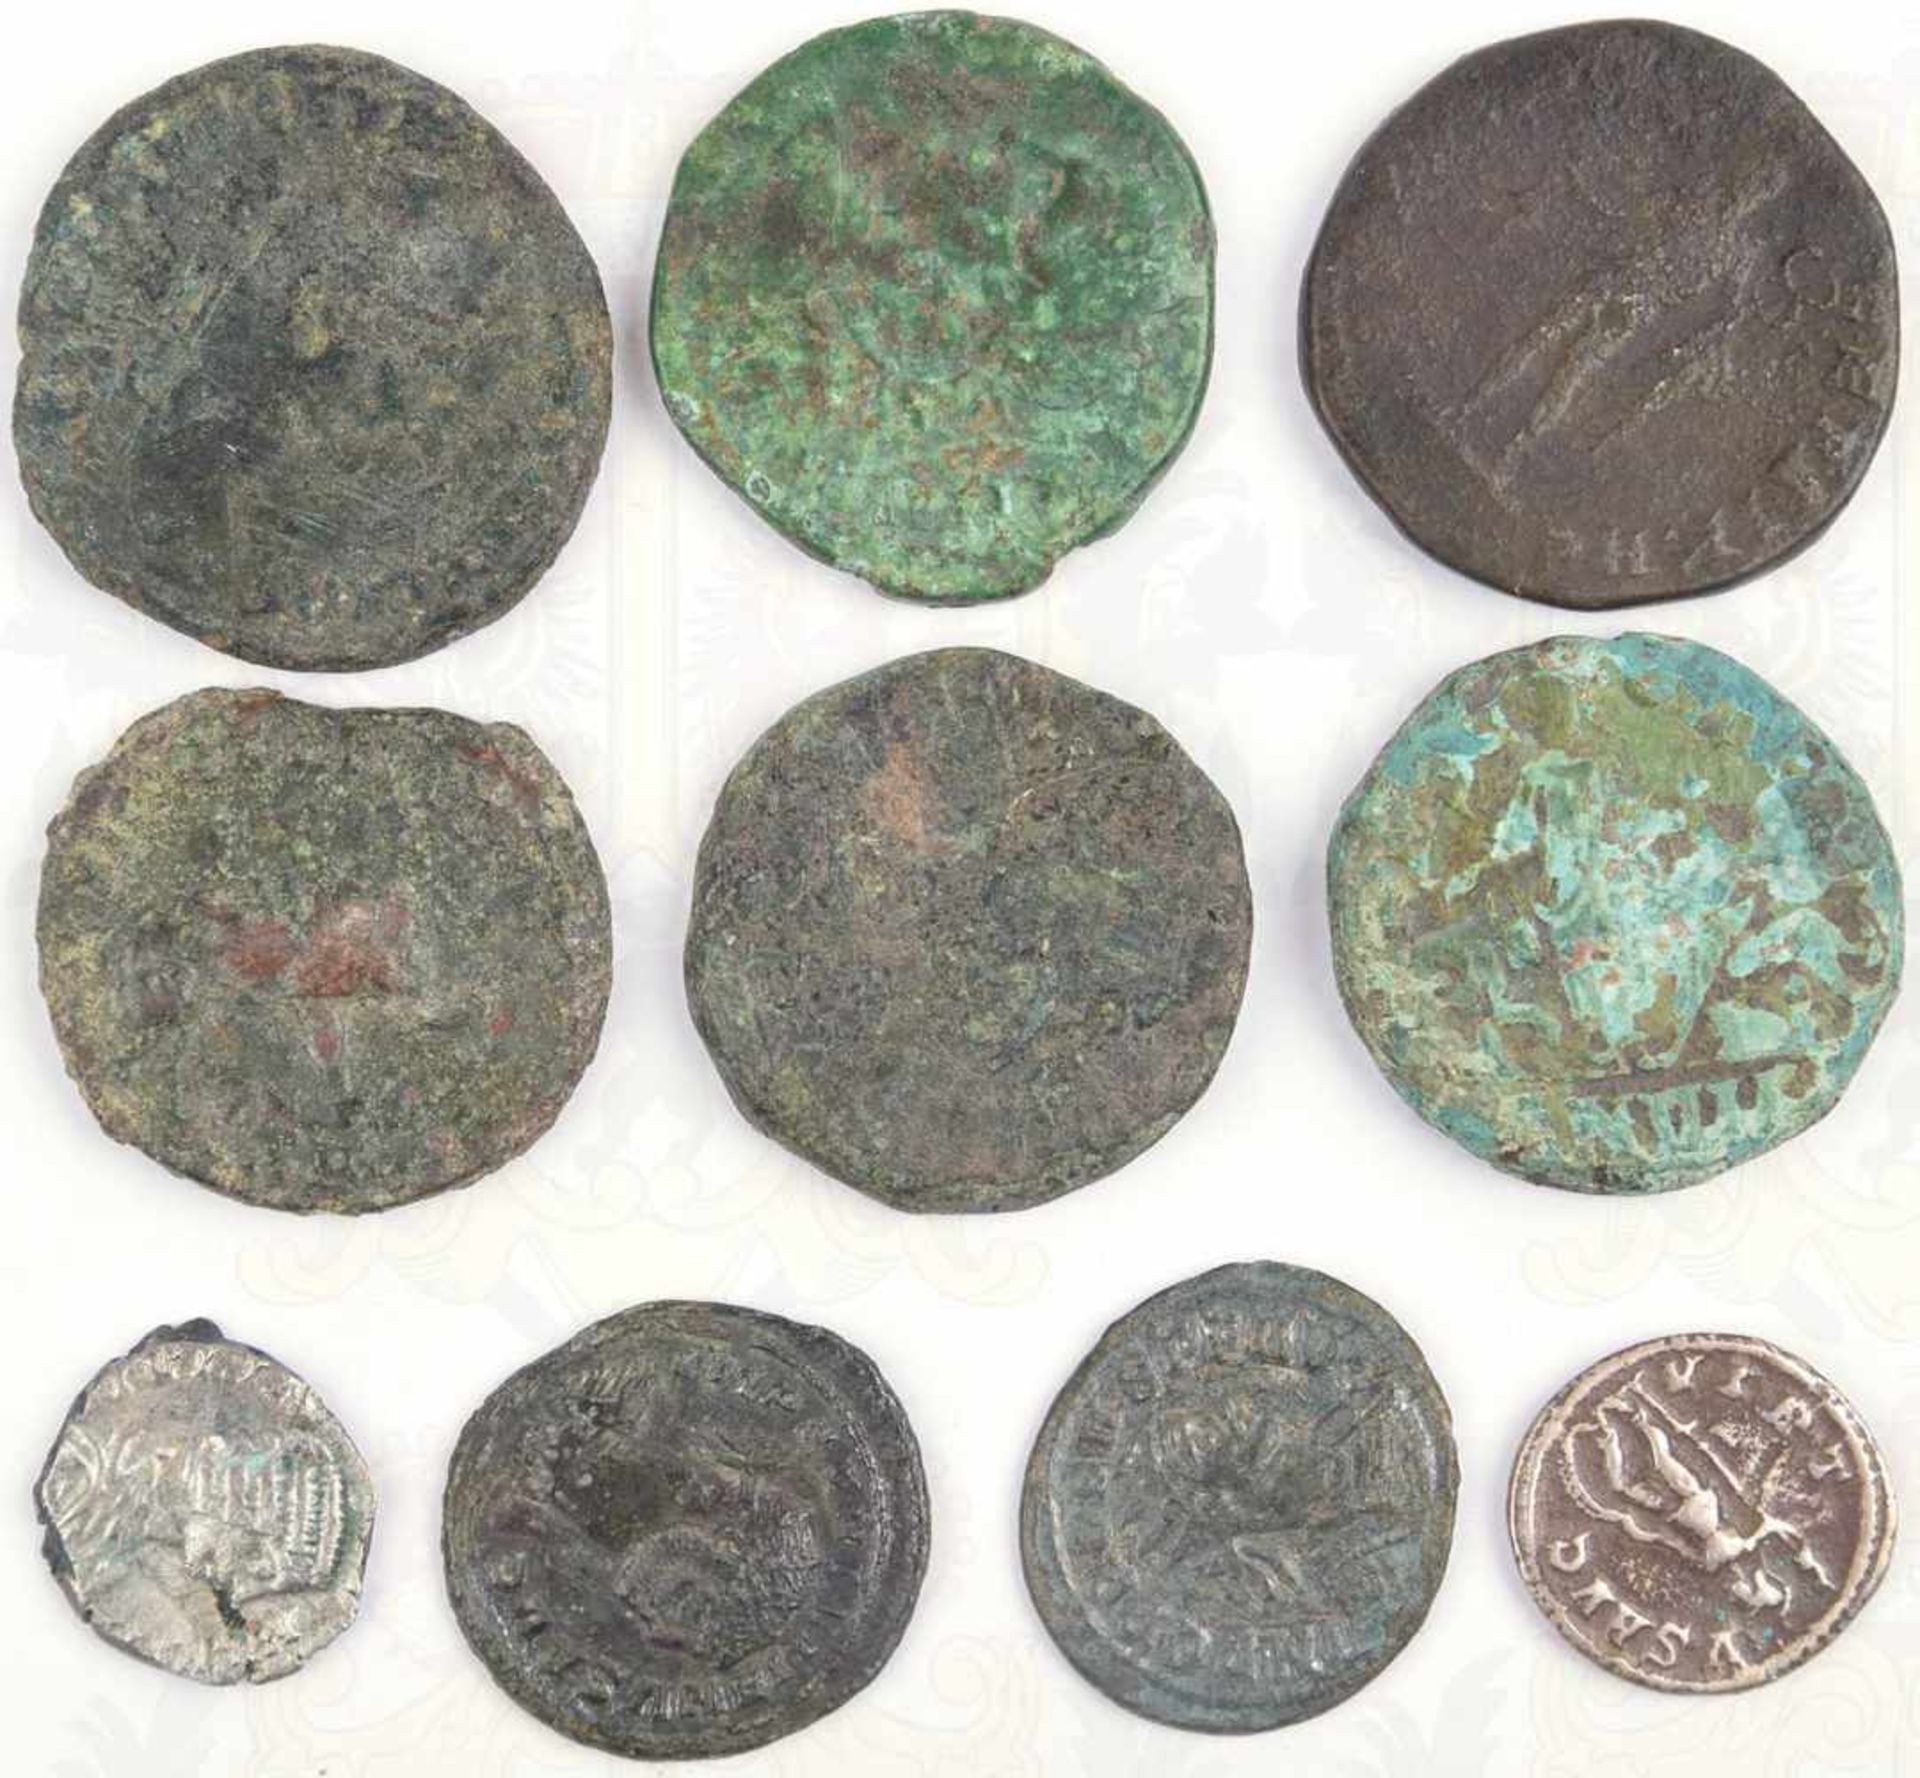 10 KLEINMÜNZEN, gereinigte Bodenfunde, meist römisch, 8 Bronze, 2 Silber, versch. Kaiserportraits, - Image 2 of 2